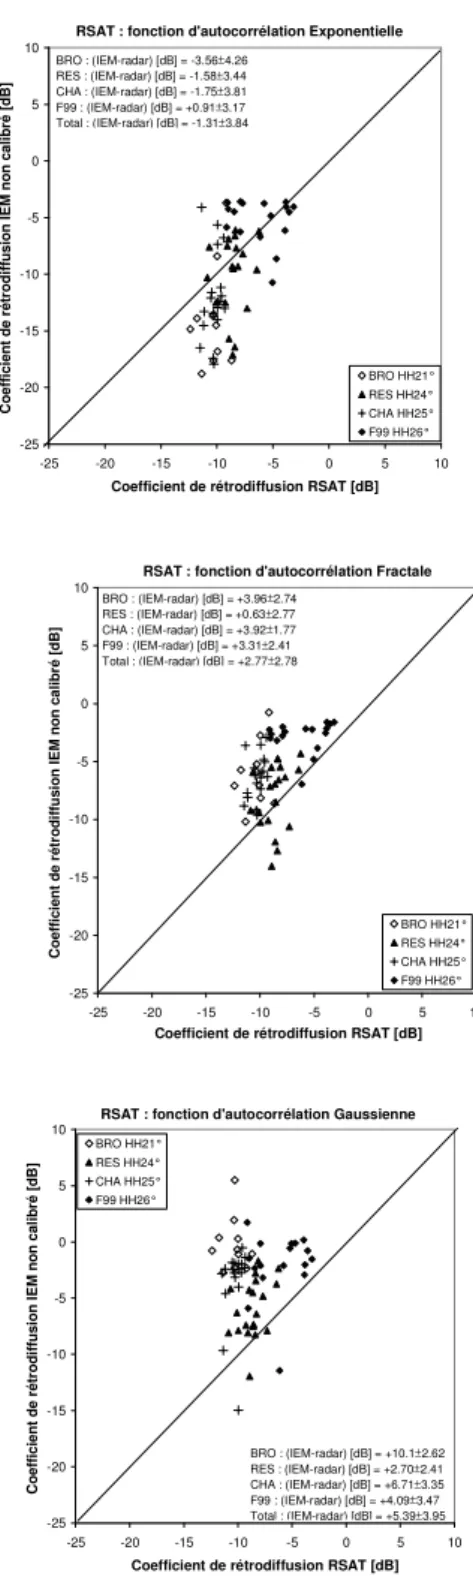 Fig. 14 - Coefficient de rétrodiffusion simulé par IEM en fonction du coefficient de  rétrodiffusion  mesuré  à  partir  des  images  radar  RSAT  HH21°,  HH24°,  HH25°  et  HH26°  pour  chacune  des  fonctions    d’autocorrélation: 